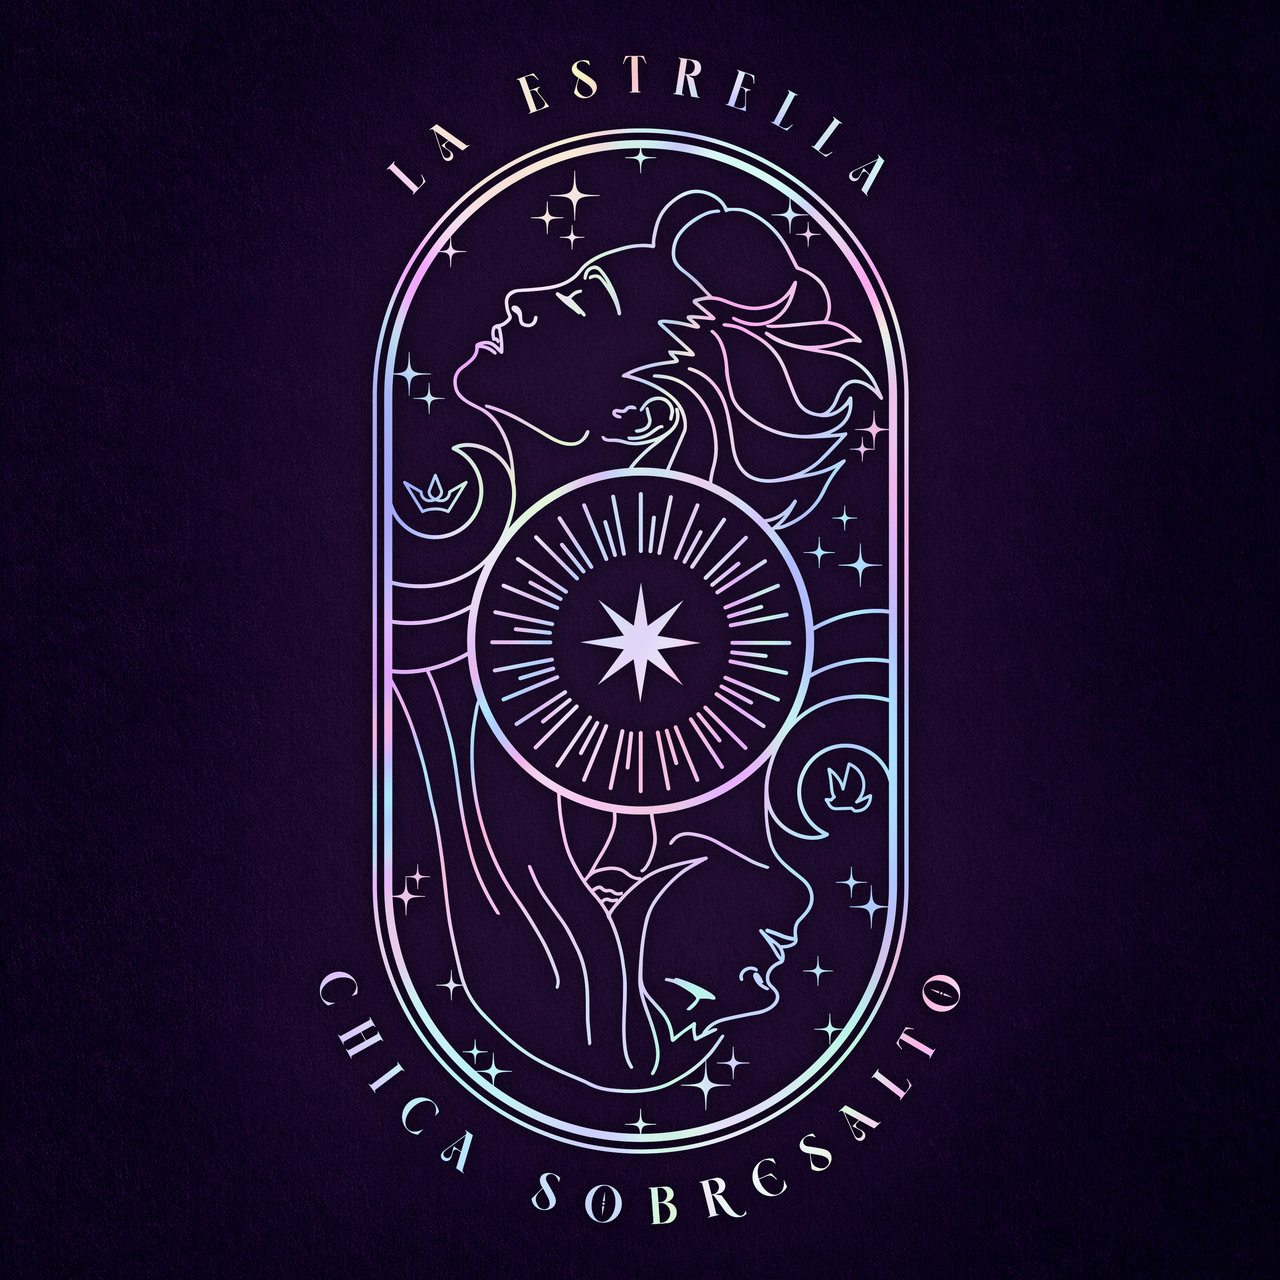 Chica Sobresalto — La estrella cover artwork